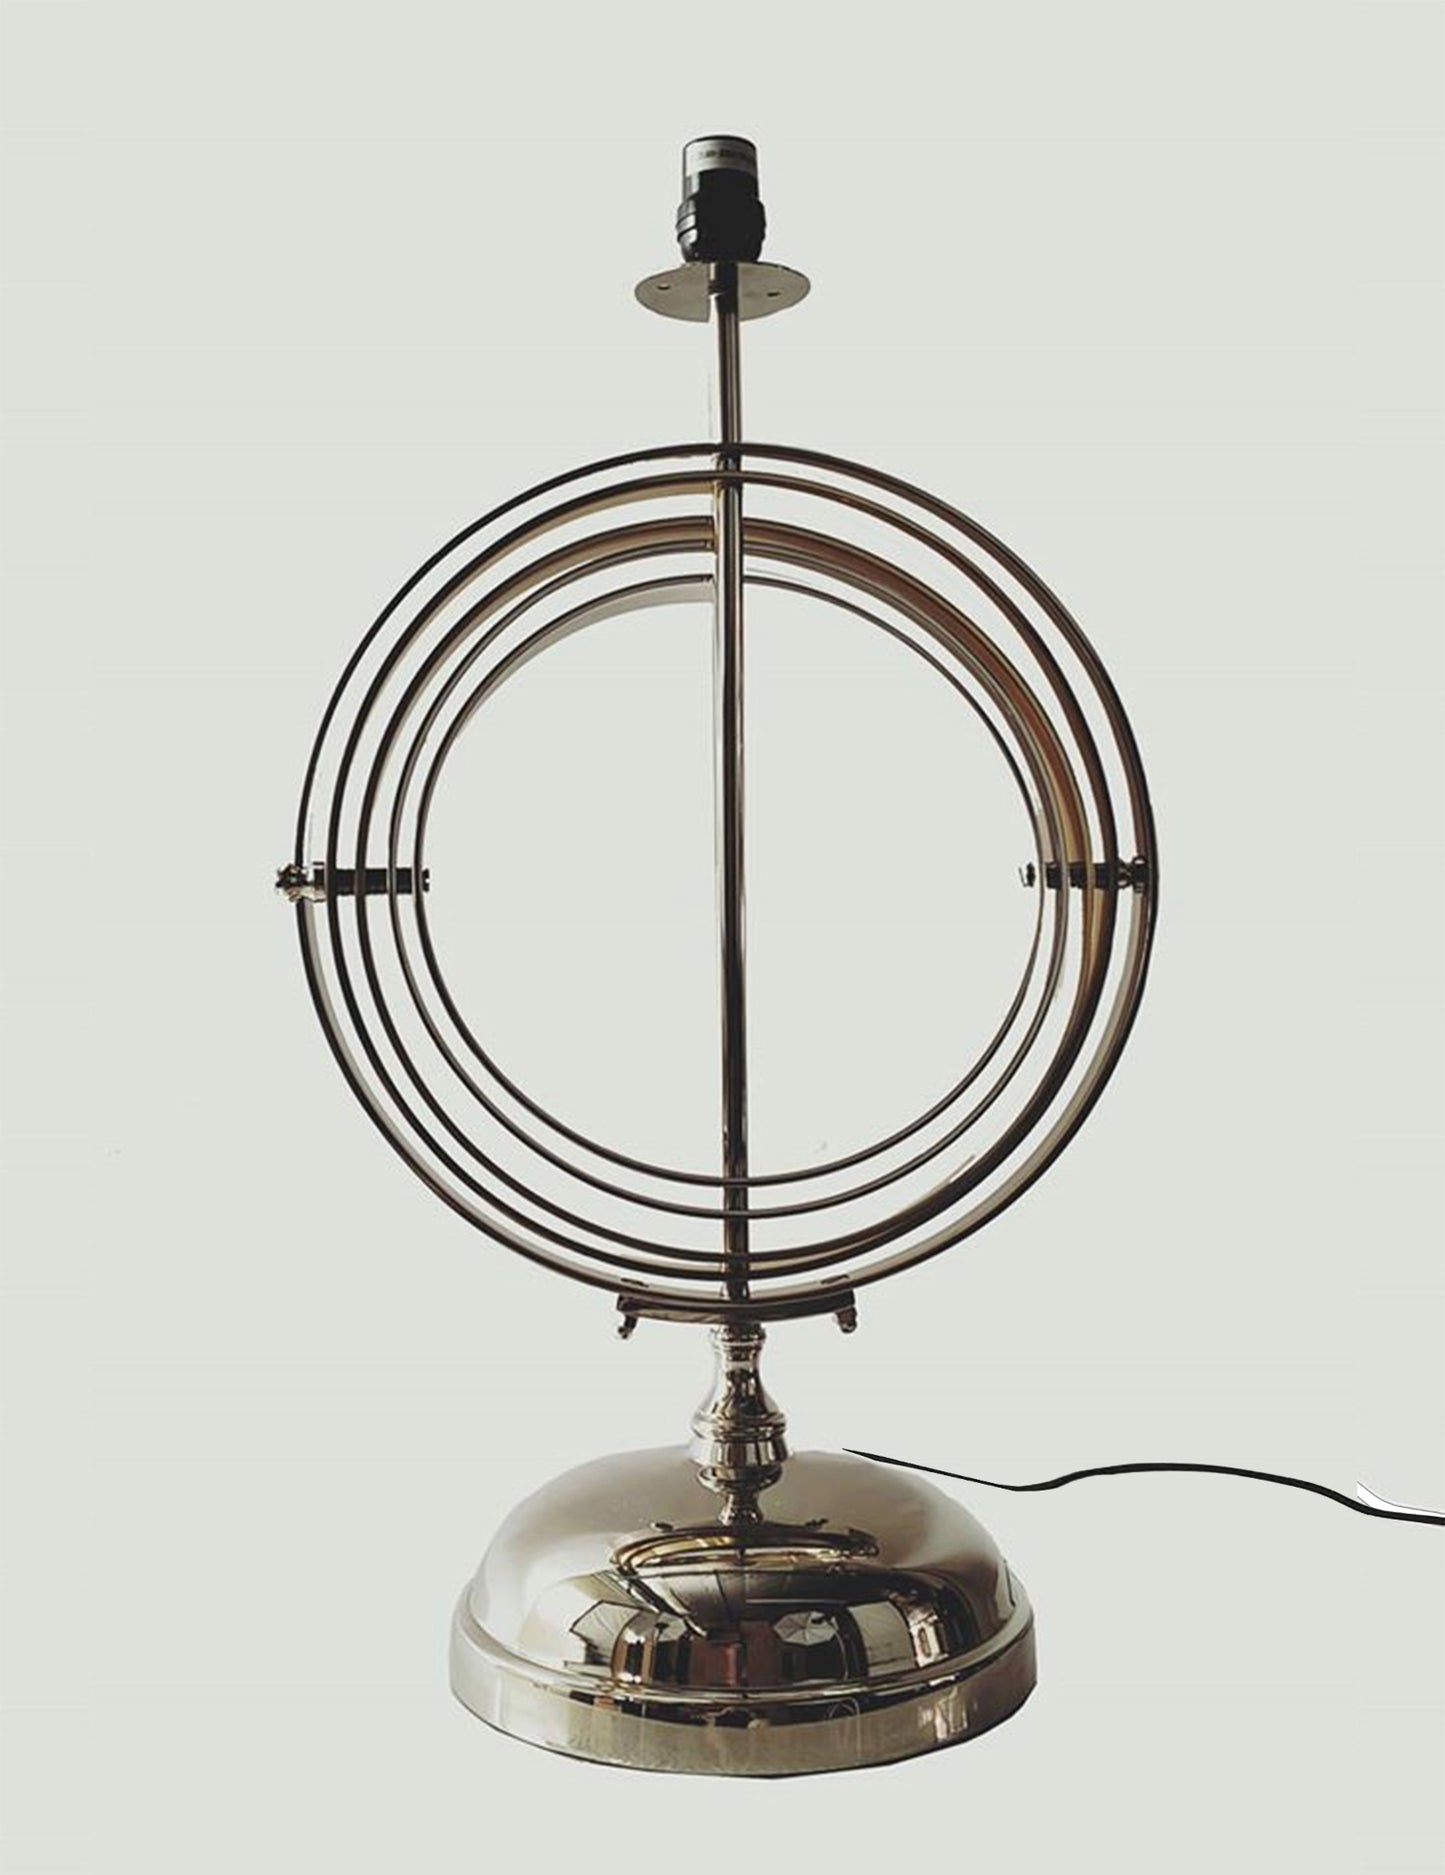 17" Bronze Metal Standard Table Lamp